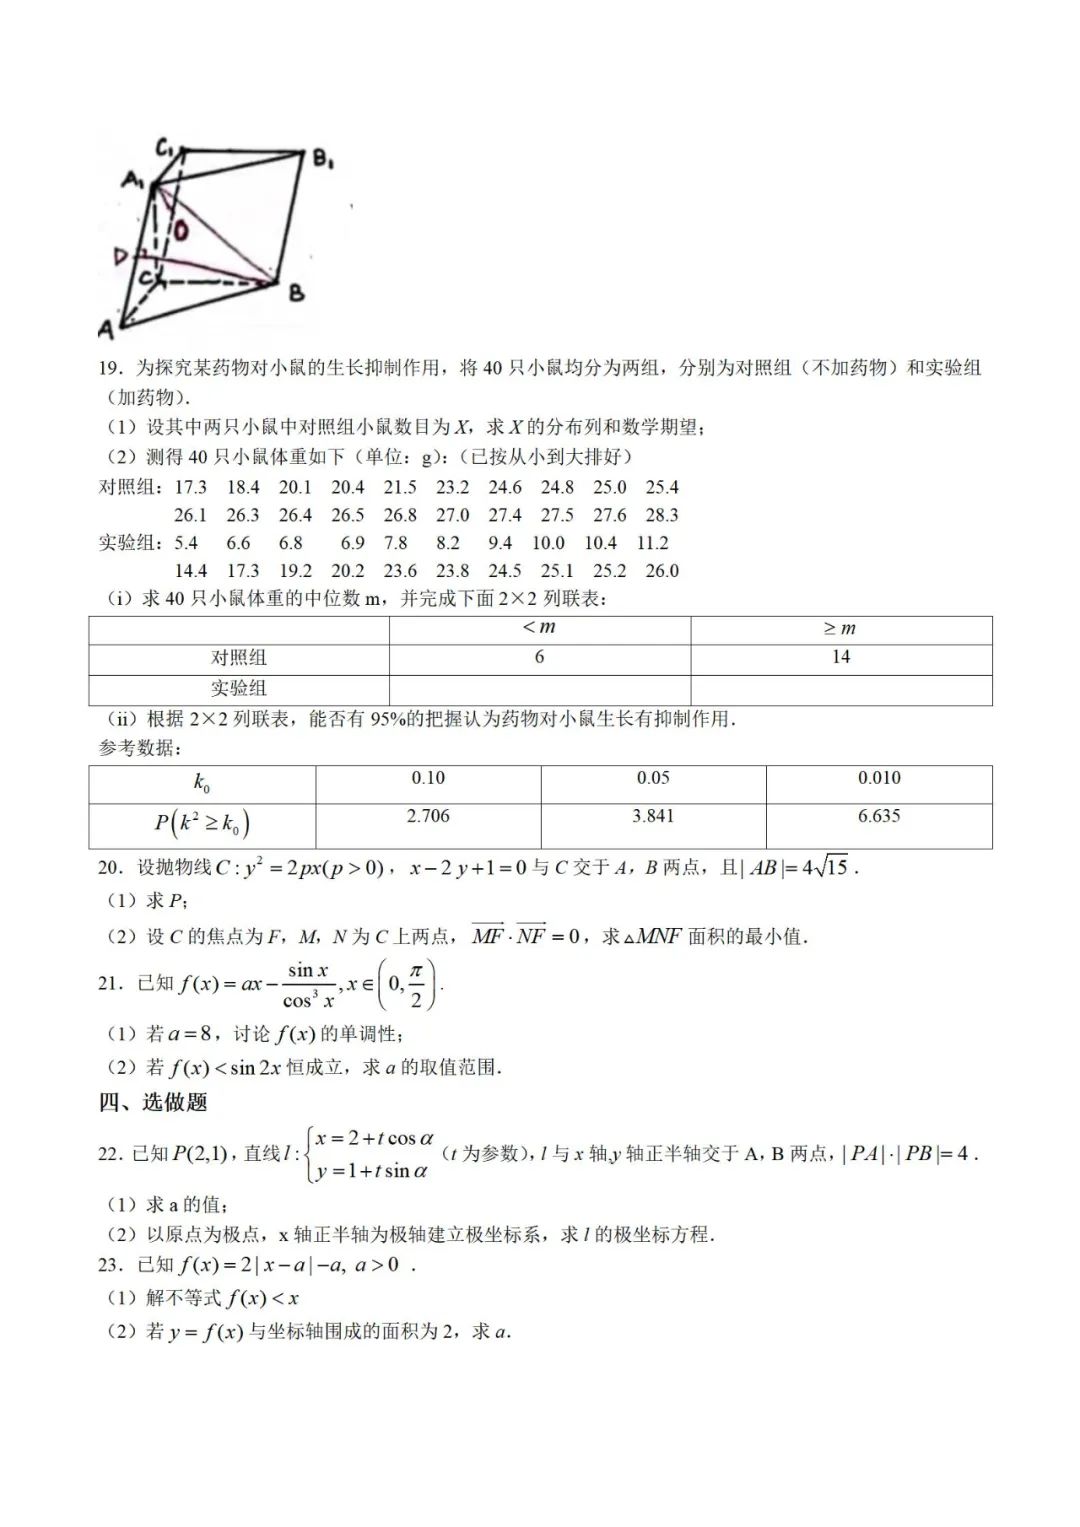 理科数学高考试题和答案(西藏)